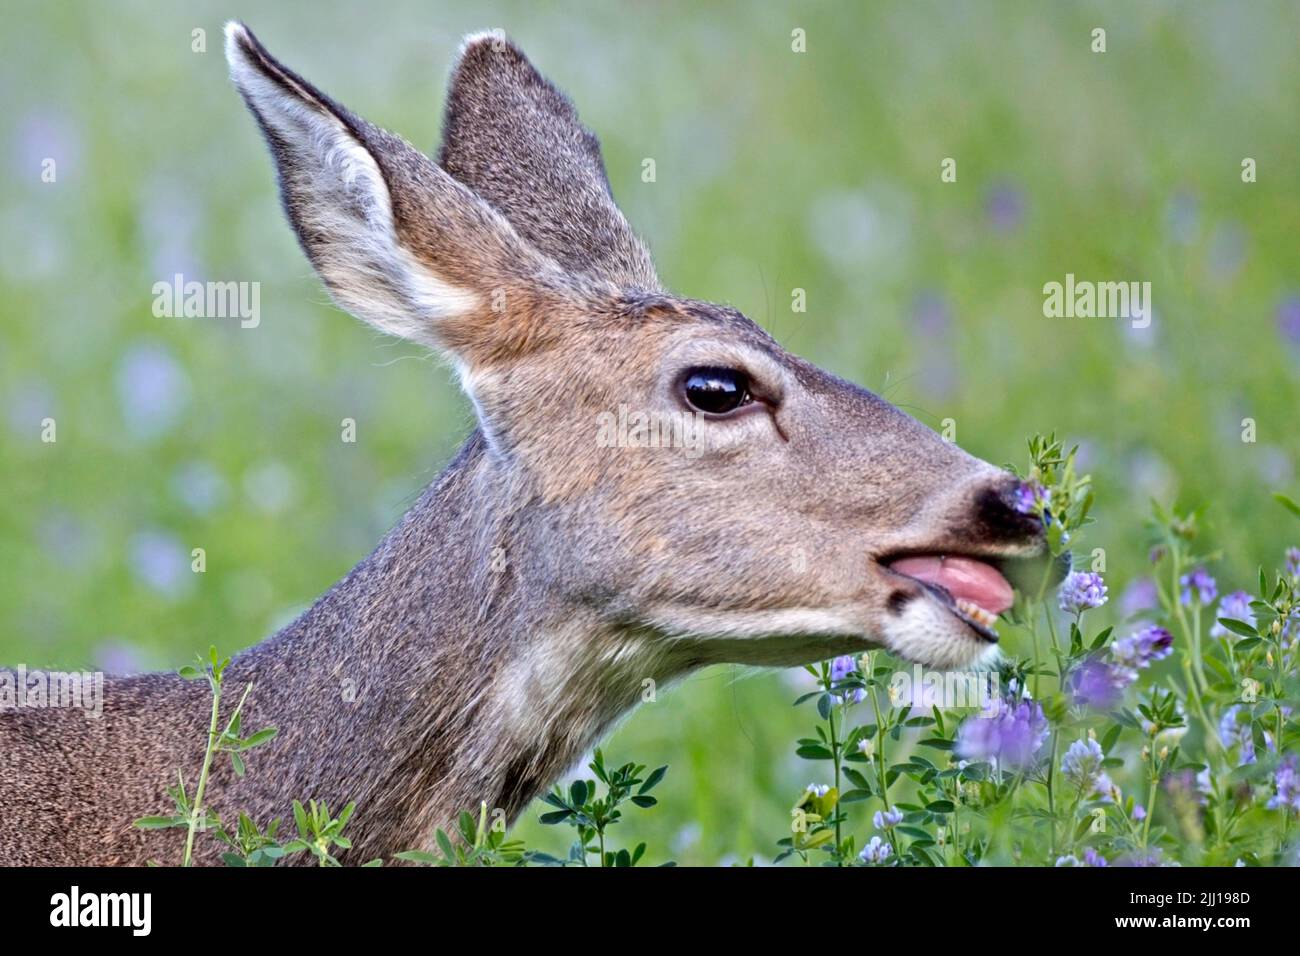 Mule Deer Doe feeding on clover plants in a meadow, closeup Stock Photo